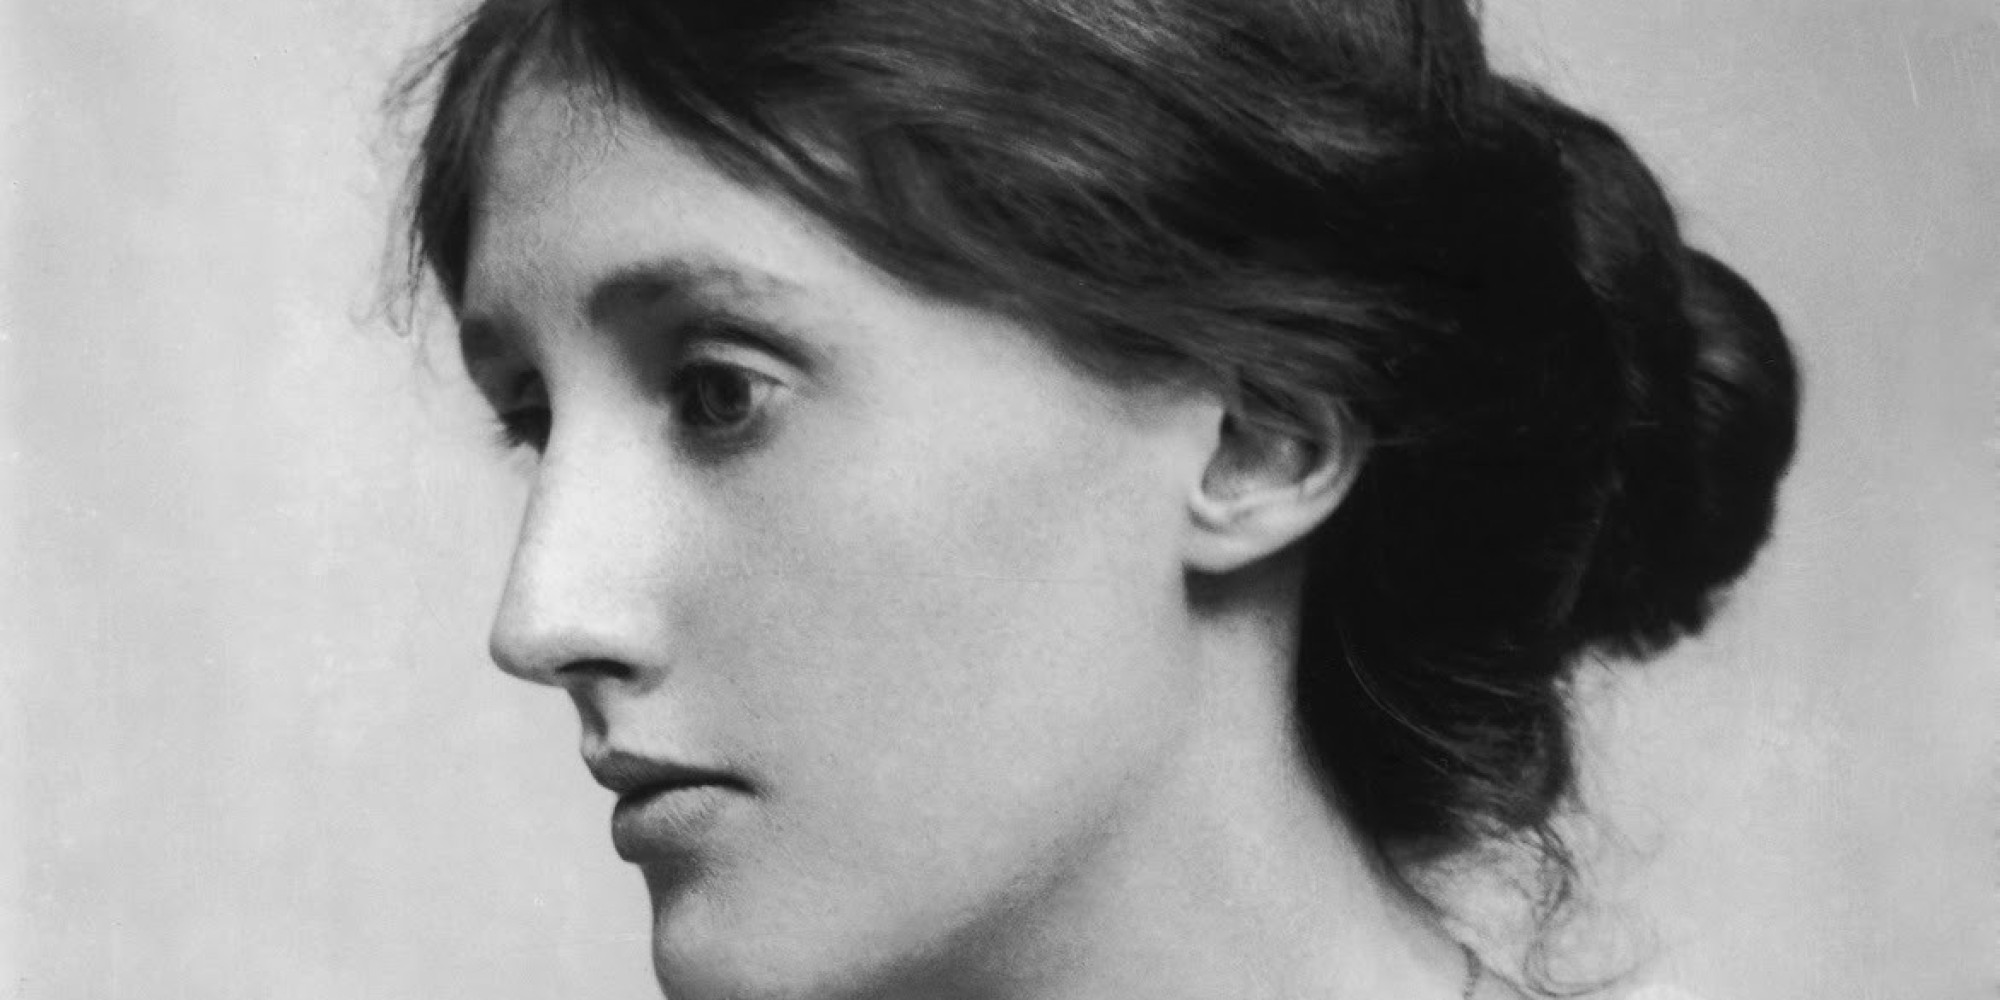  “Escucho voces, no puedo concentrarme”: Las desgarradoras últimas horas de la escritora Virginia Woolf